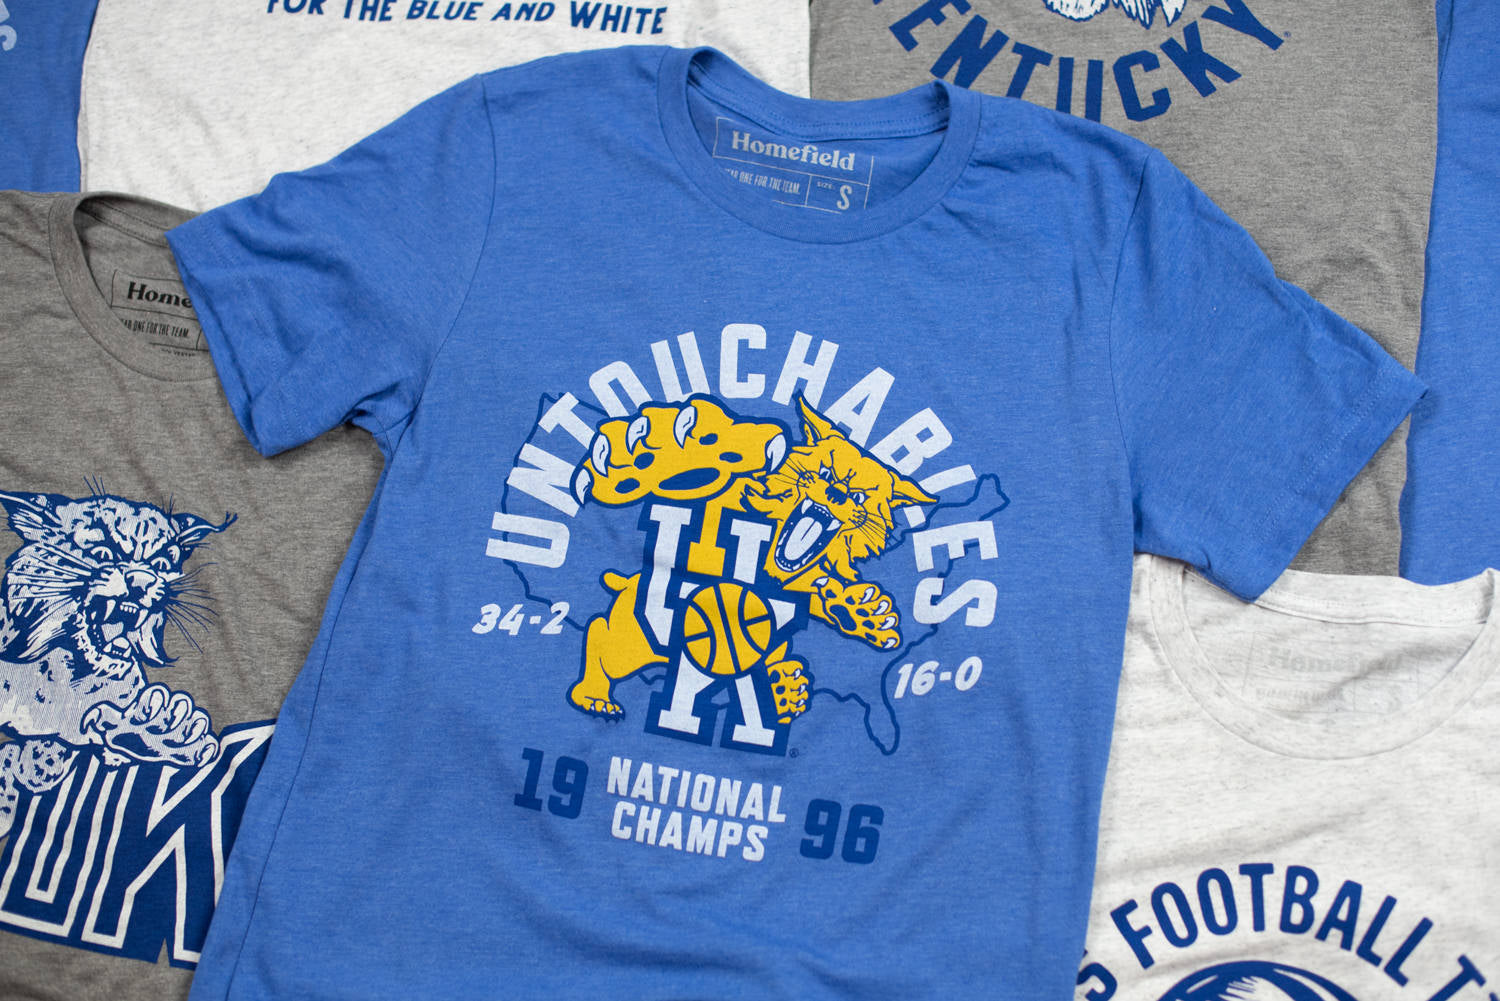 Kentucky Wildcats T-Shirts in Kentucky Wildcats Team Shop